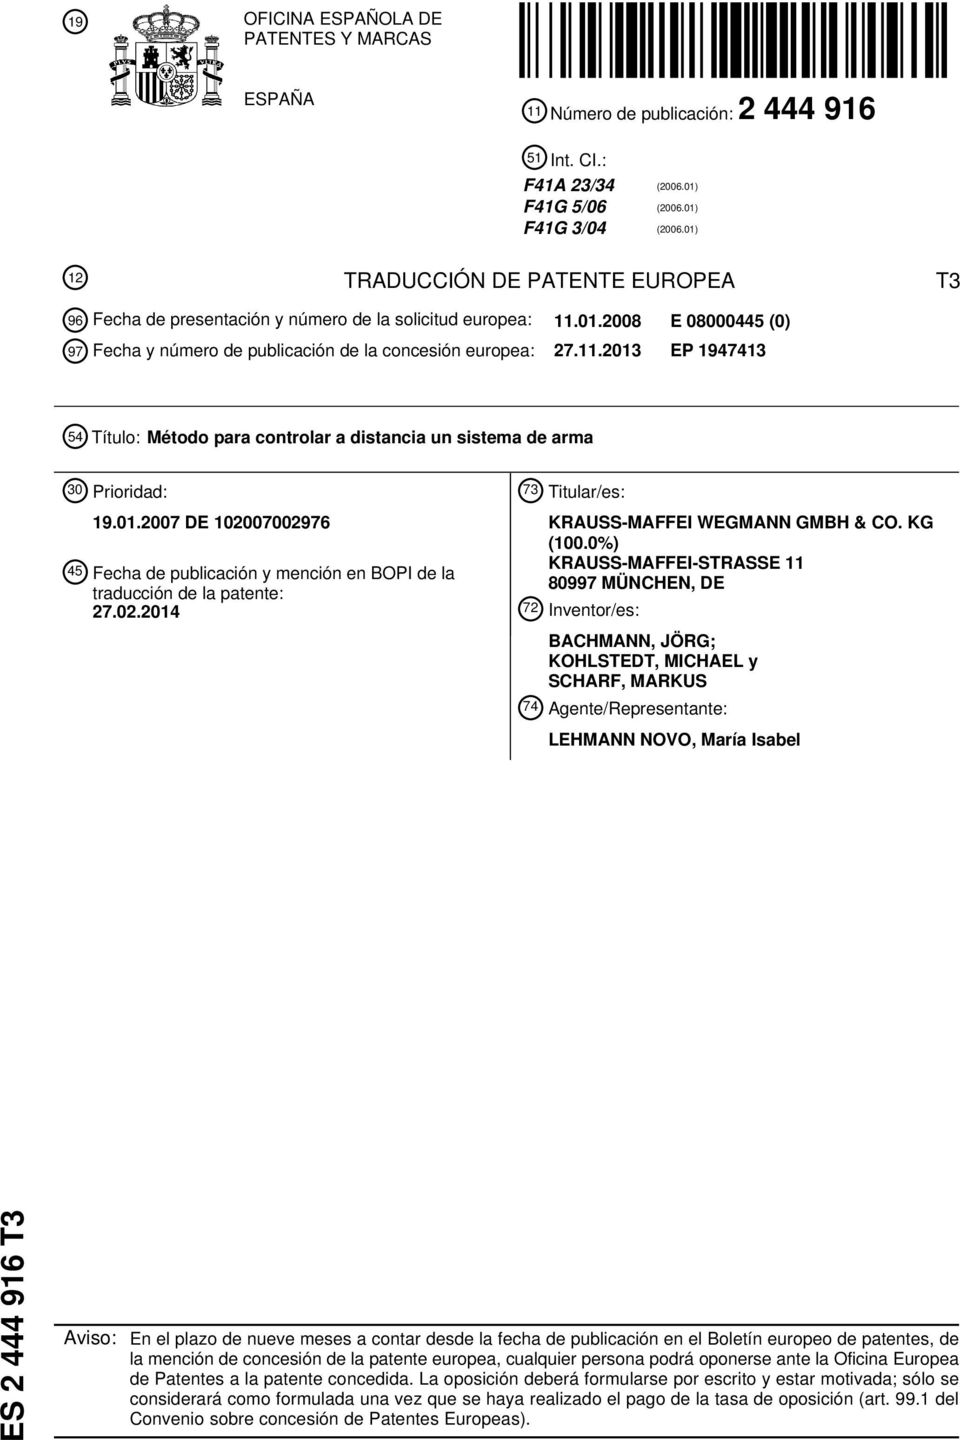 01.07 DE 07002976 4 Fecha de publicación y mención en BOPI de la traducción de la patente: 27.02.14 73 Titular/es: KRAUSS-MAFFEI WEGMANN GMBH & CO. KG (0.